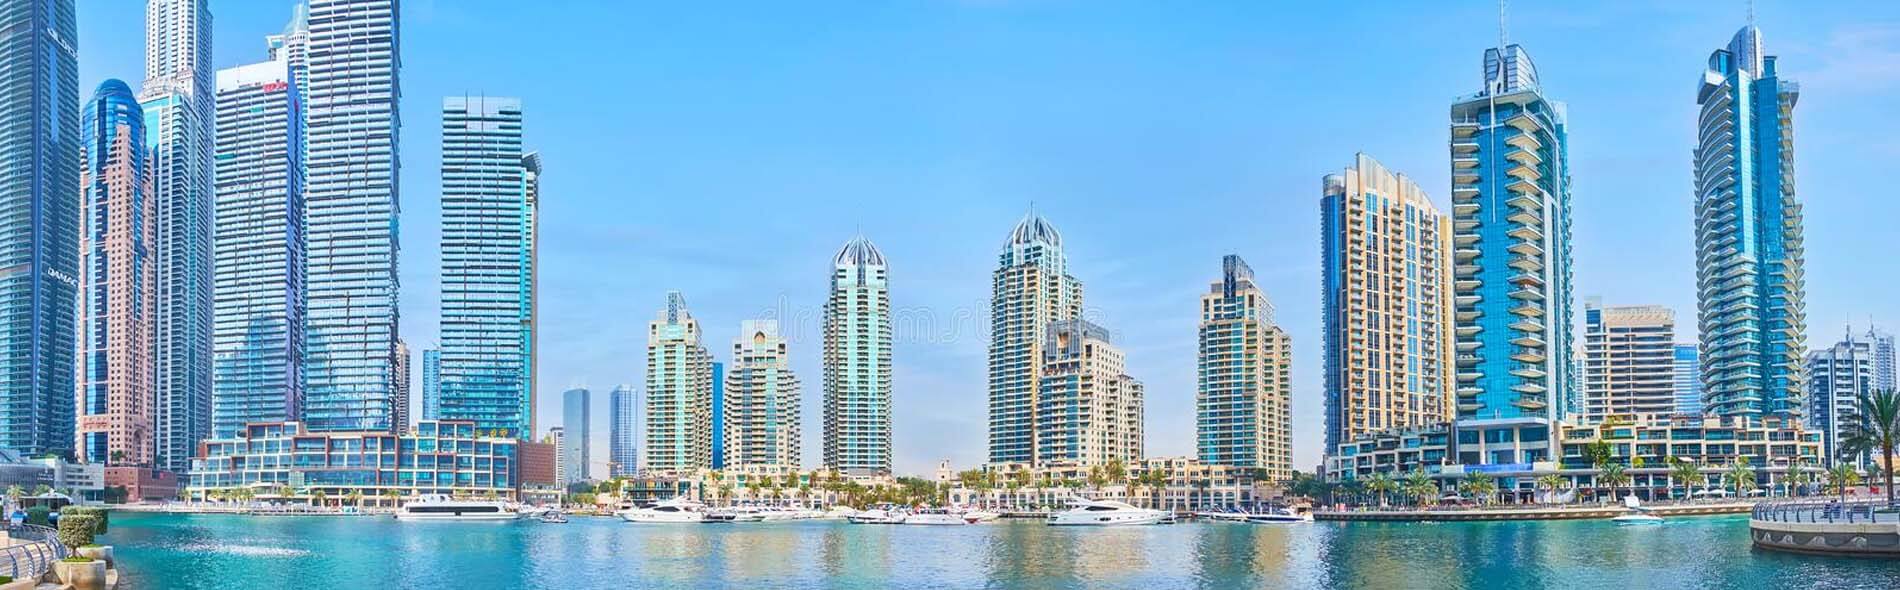 Dubai Marina Rent a Car